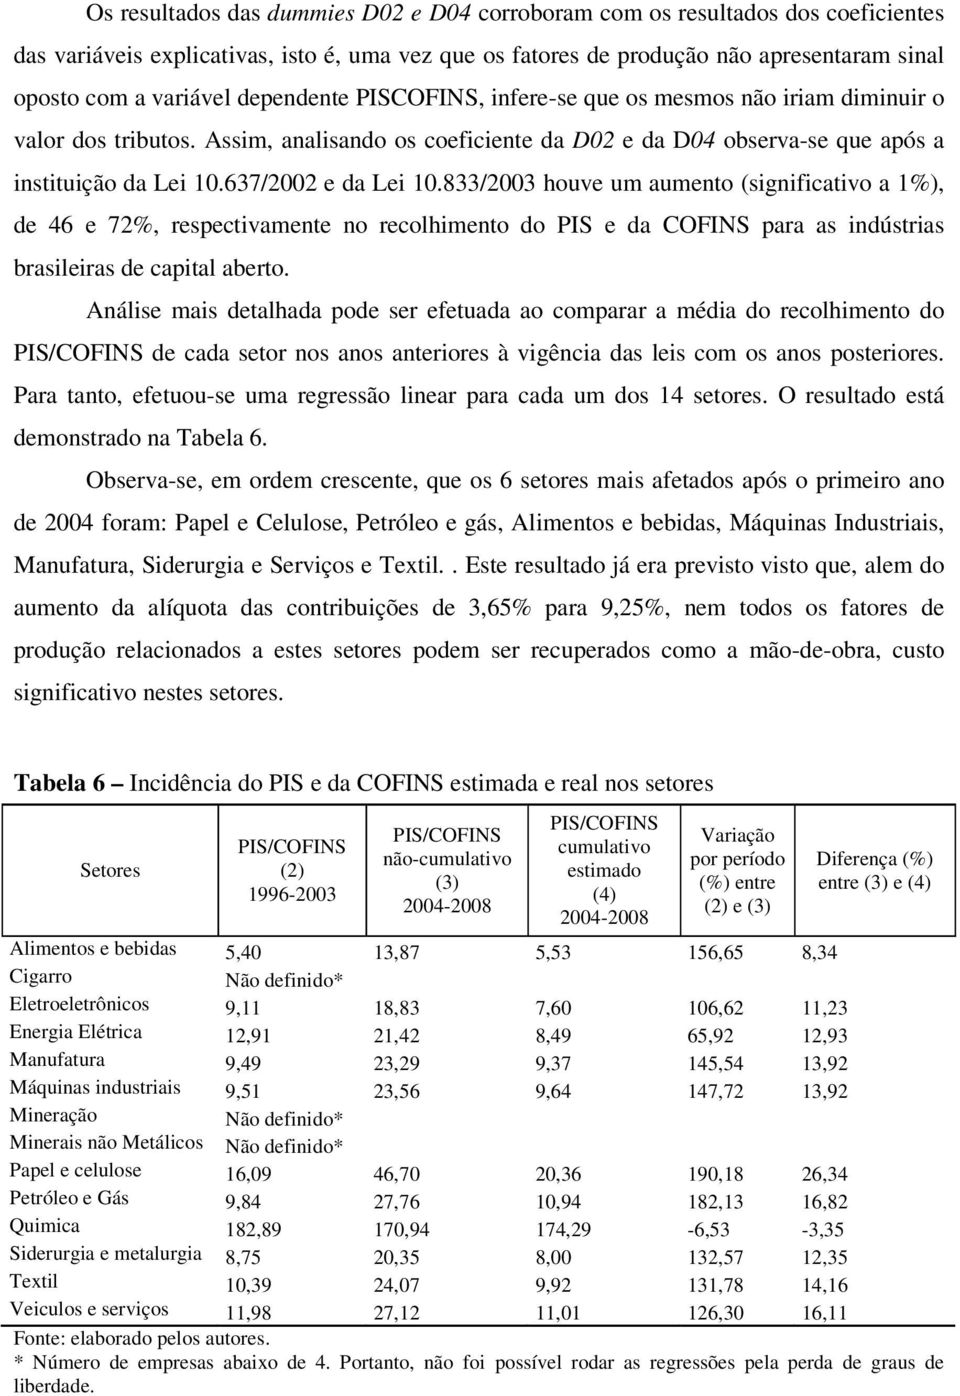 833/2003 houve um aumento (significativo a 1%), de 46 e 72%, respectivamente no recolhimento do PIS e da COFINS para as indústrias brasileiras de capal aberto.